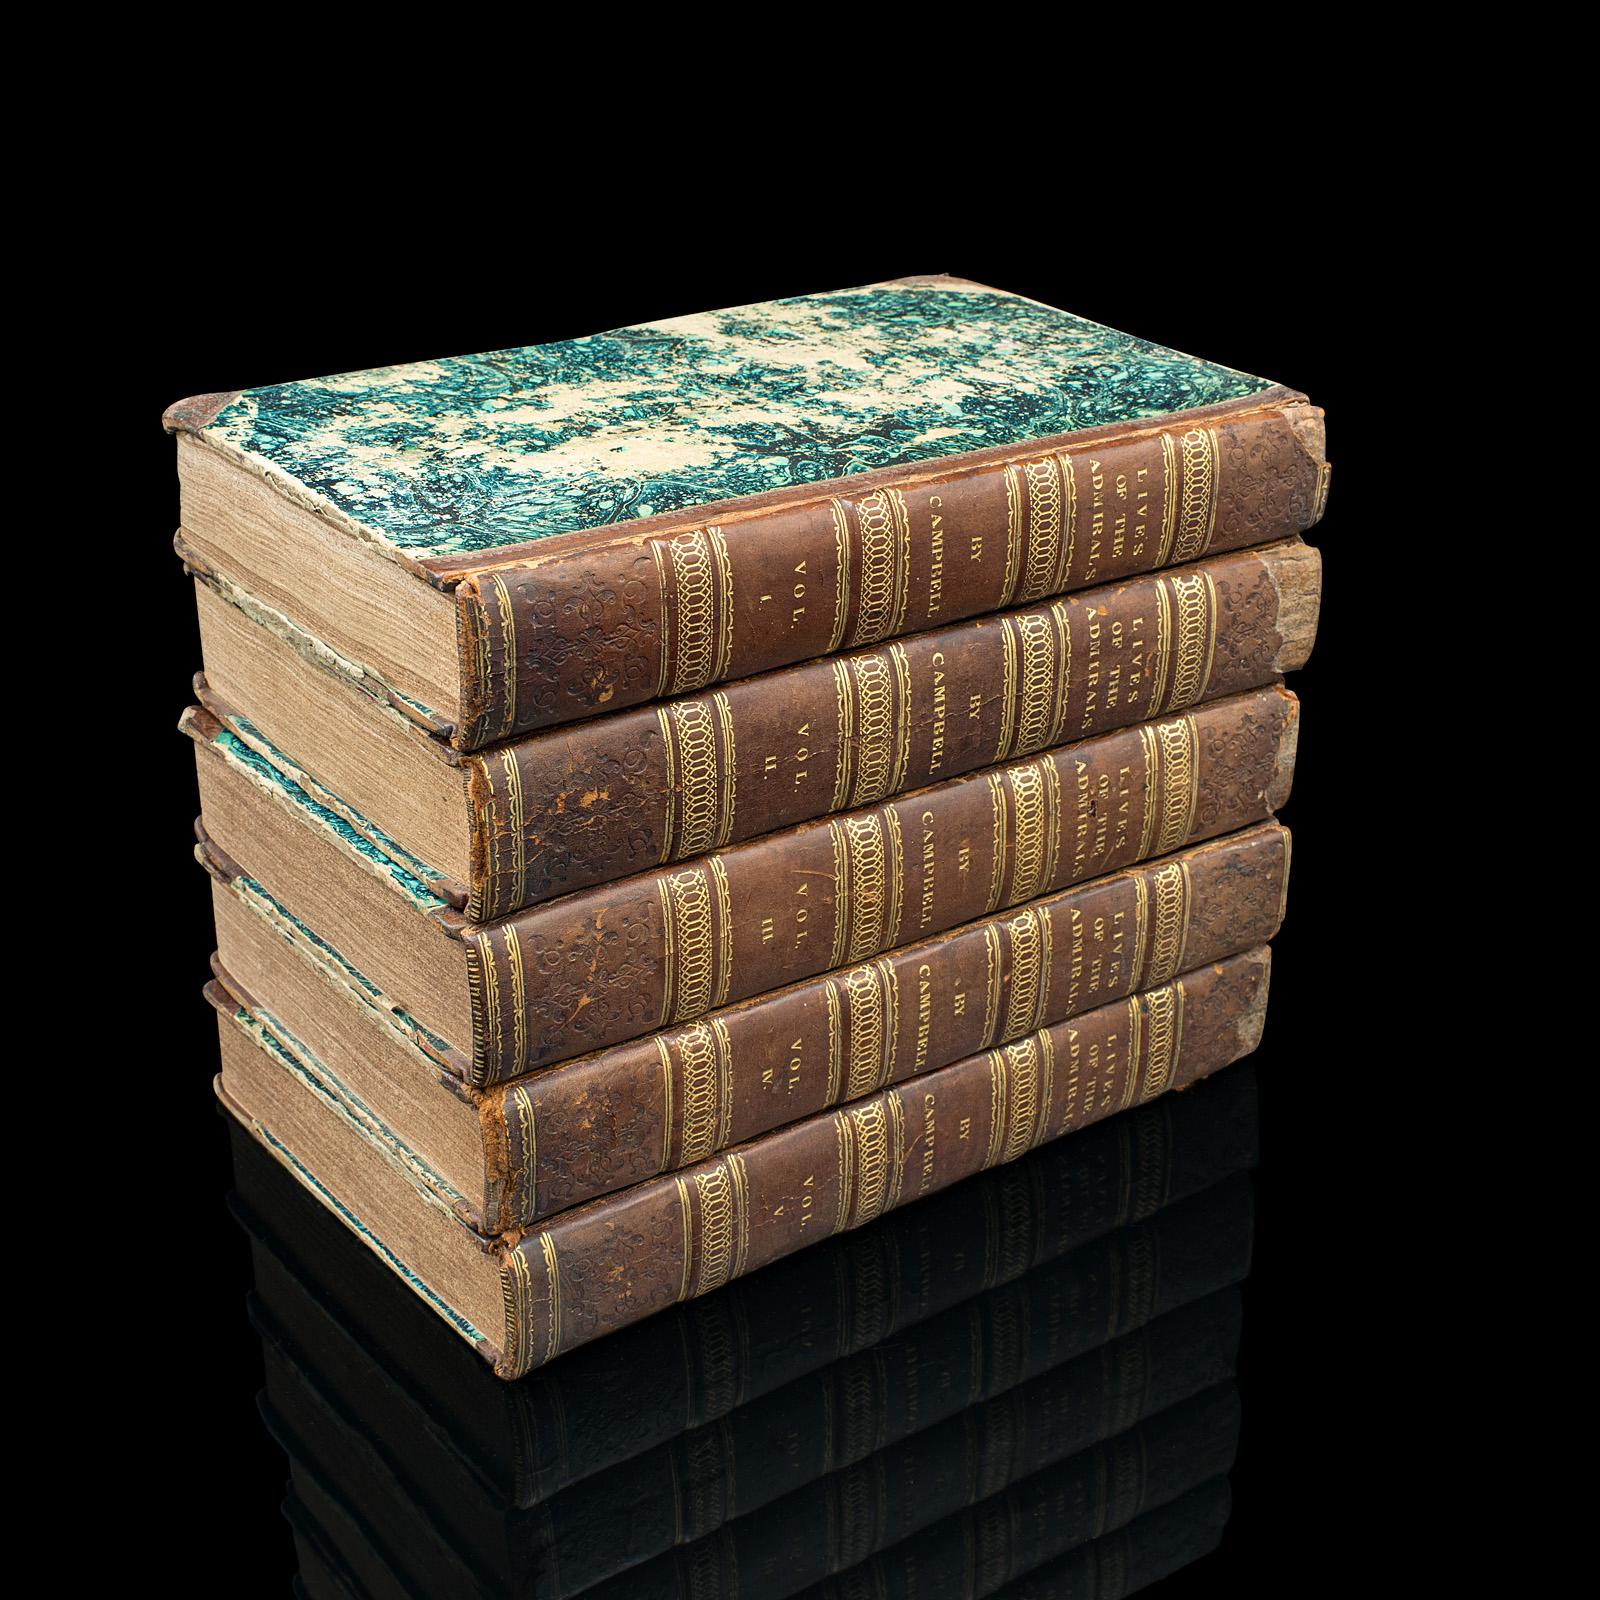 Il s'agit d'un ensemble de 5 volumes anciens, Lives of the British Admirals par Dr John Campbell et al. Un livre d'intérêt naval en langue anglaise, relié, publié à Londres en 1817.

Comprend les quatre volumes originaux de l'historien écossais John